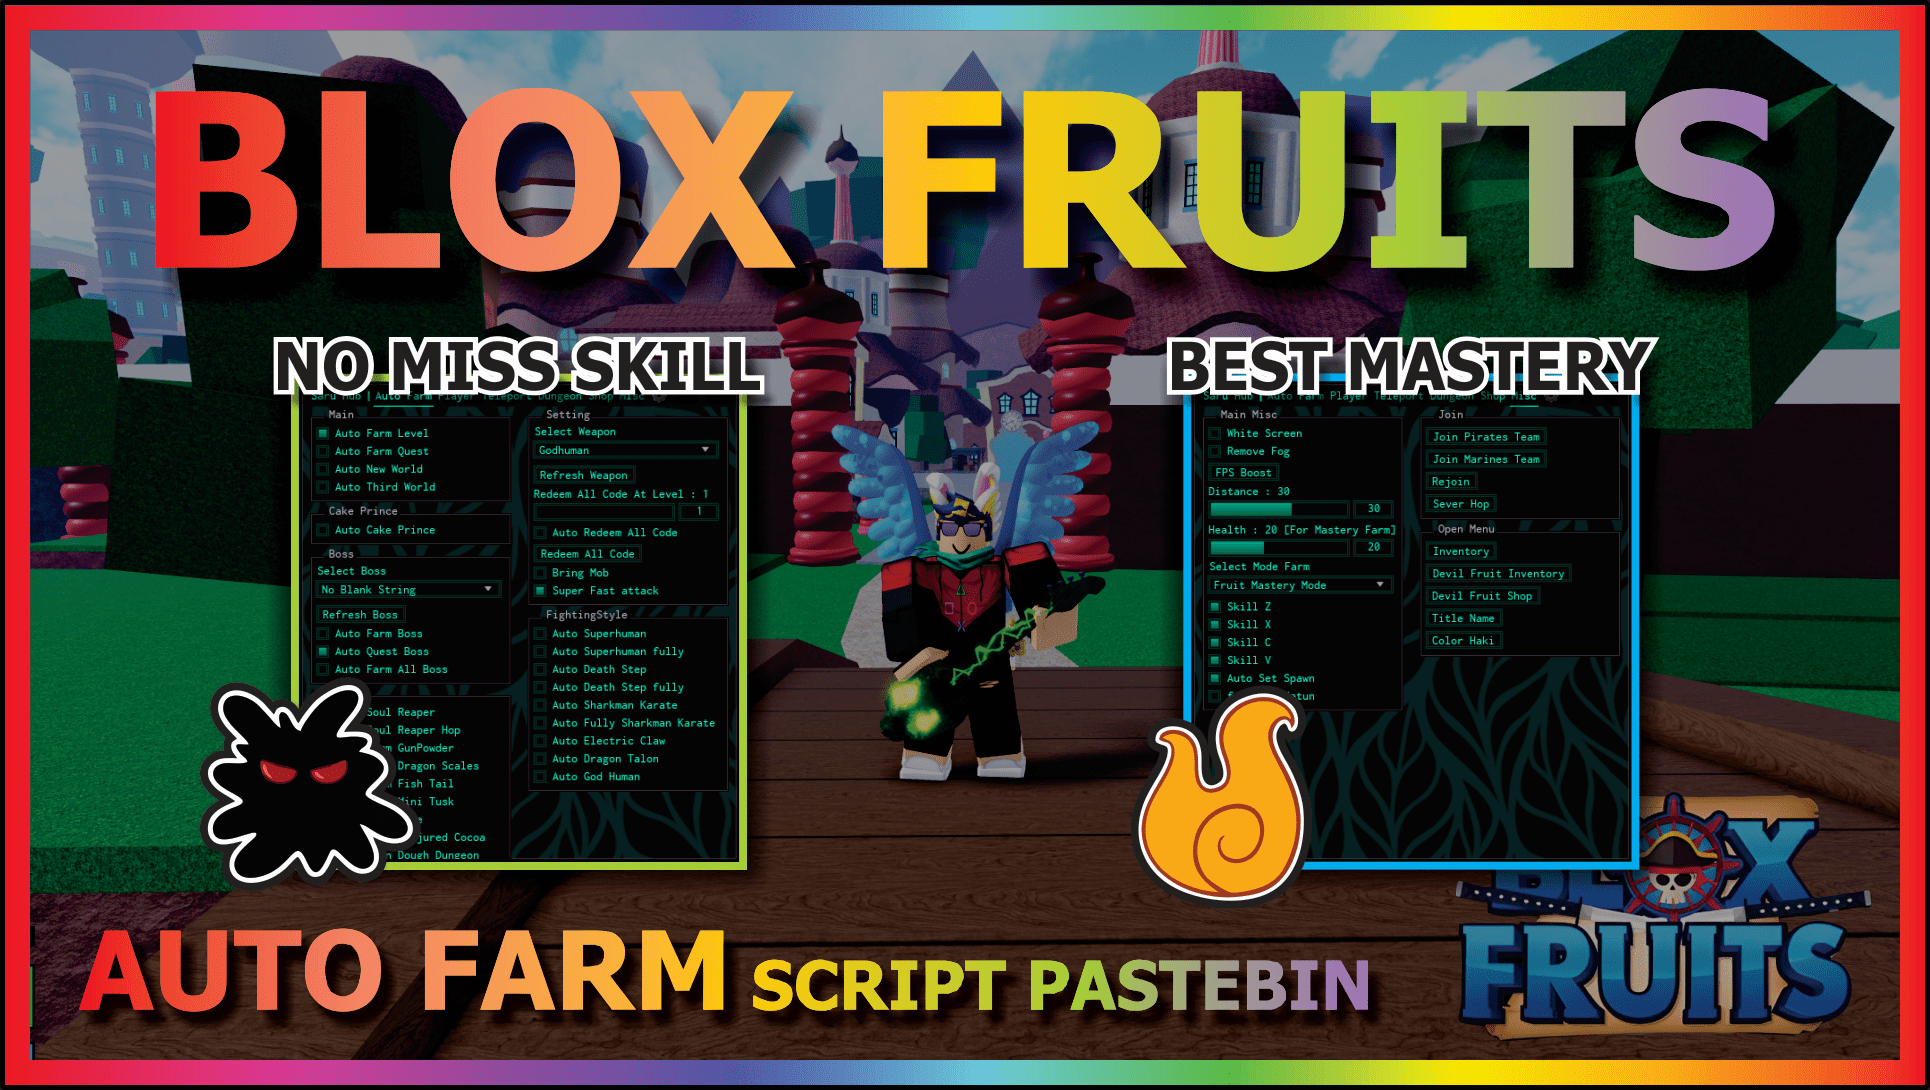 Blox Fruits [Auto Farm/Auto Attack/Auto Skills] Scripts